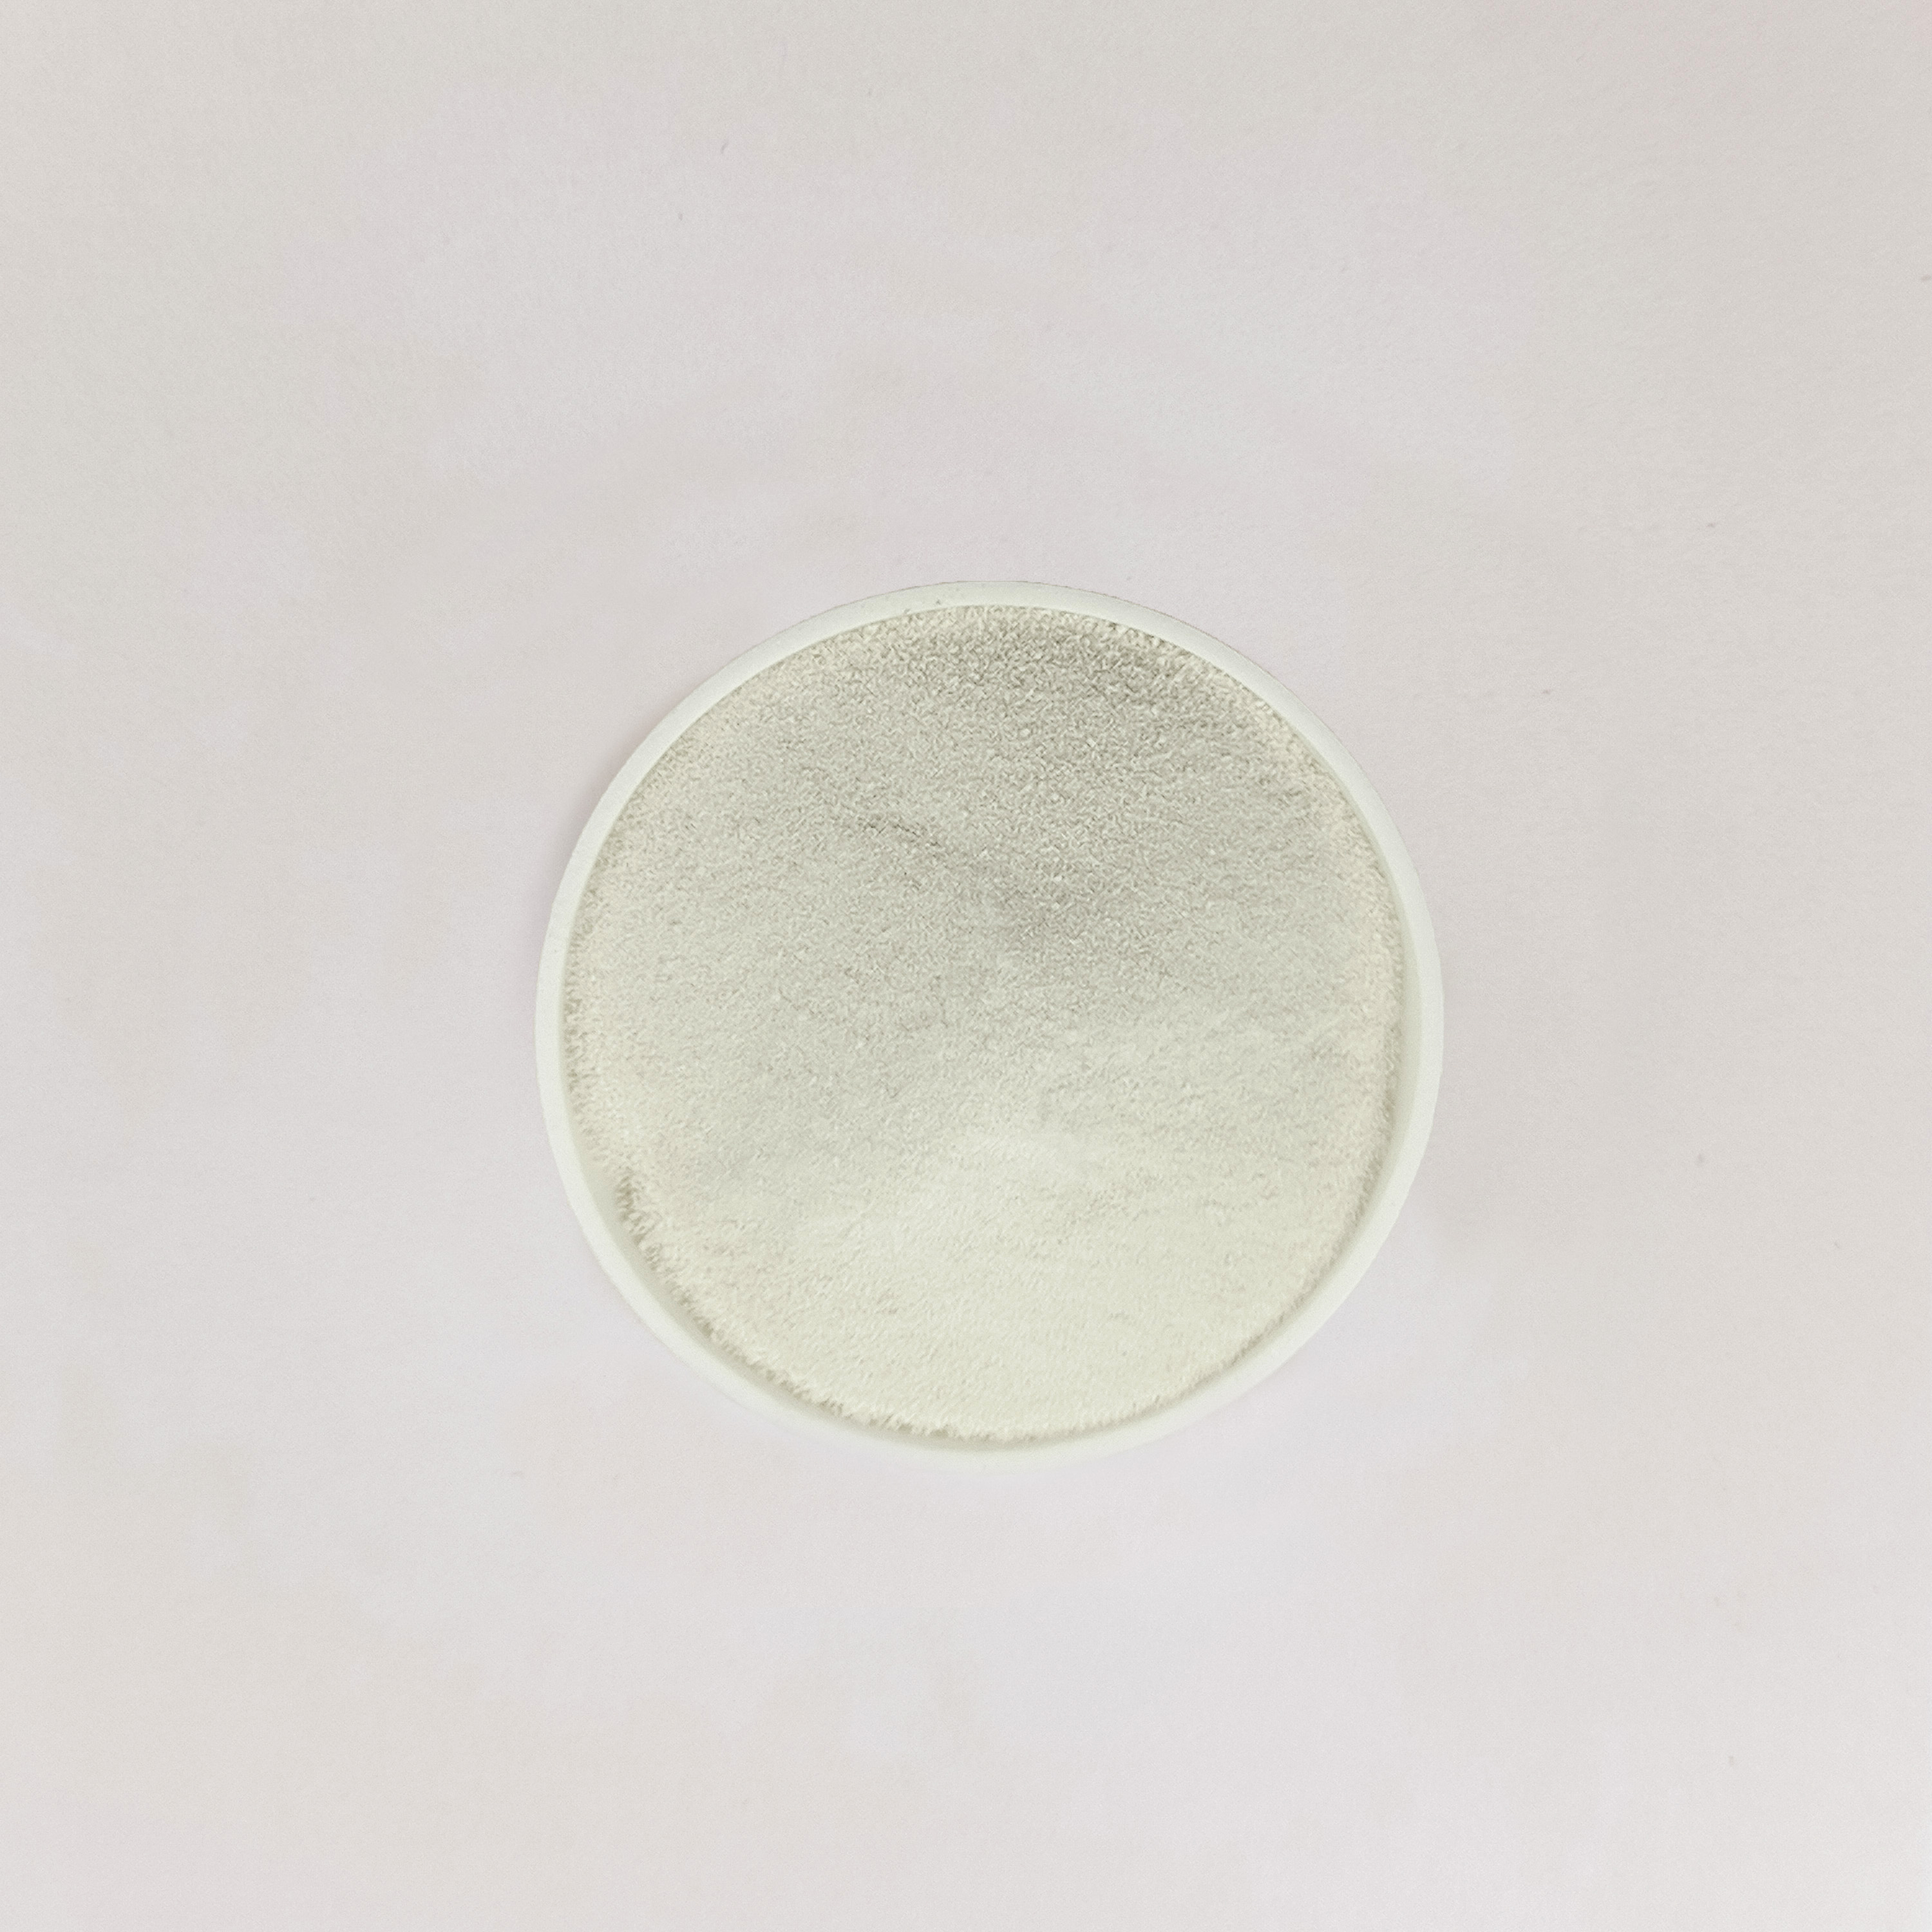 I-Microalgae Protein 80% yeVegan&Natural Ihlanjululwe